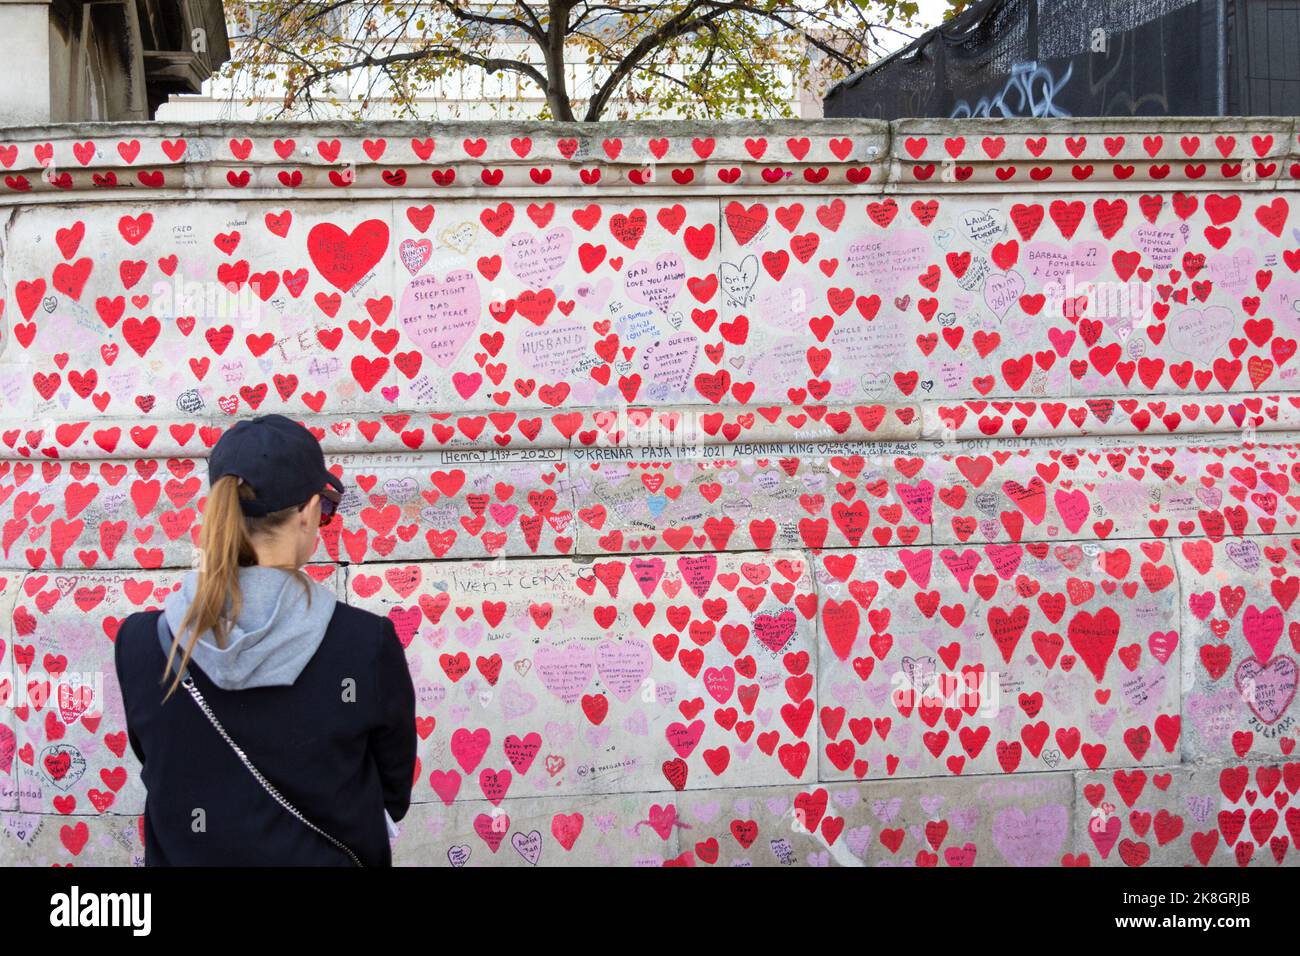 El muro conmemorativo nacional covid con una mujer mirando los miles de corazones y mensajes, londres, reino unido Foto de stock